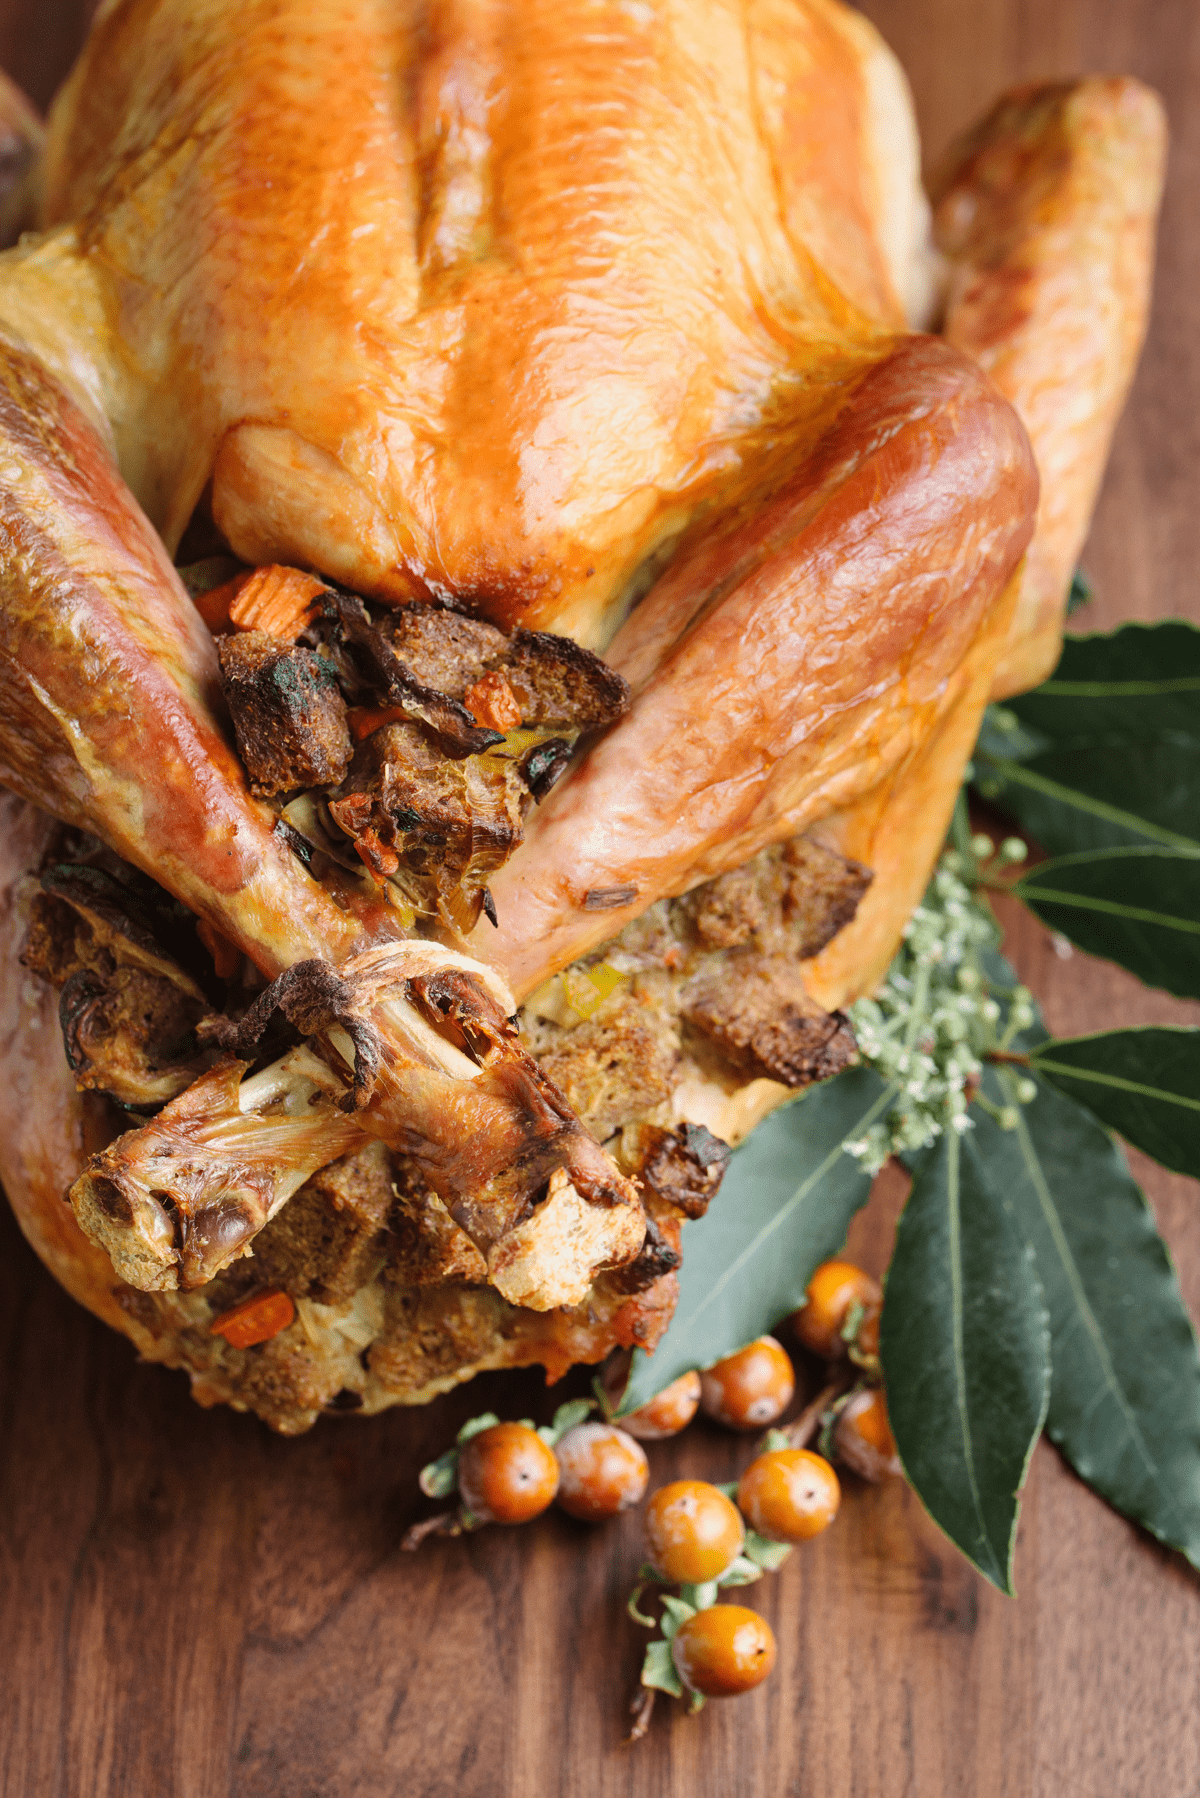 Roasted Turkey Recipe by Tiffani Thiessen